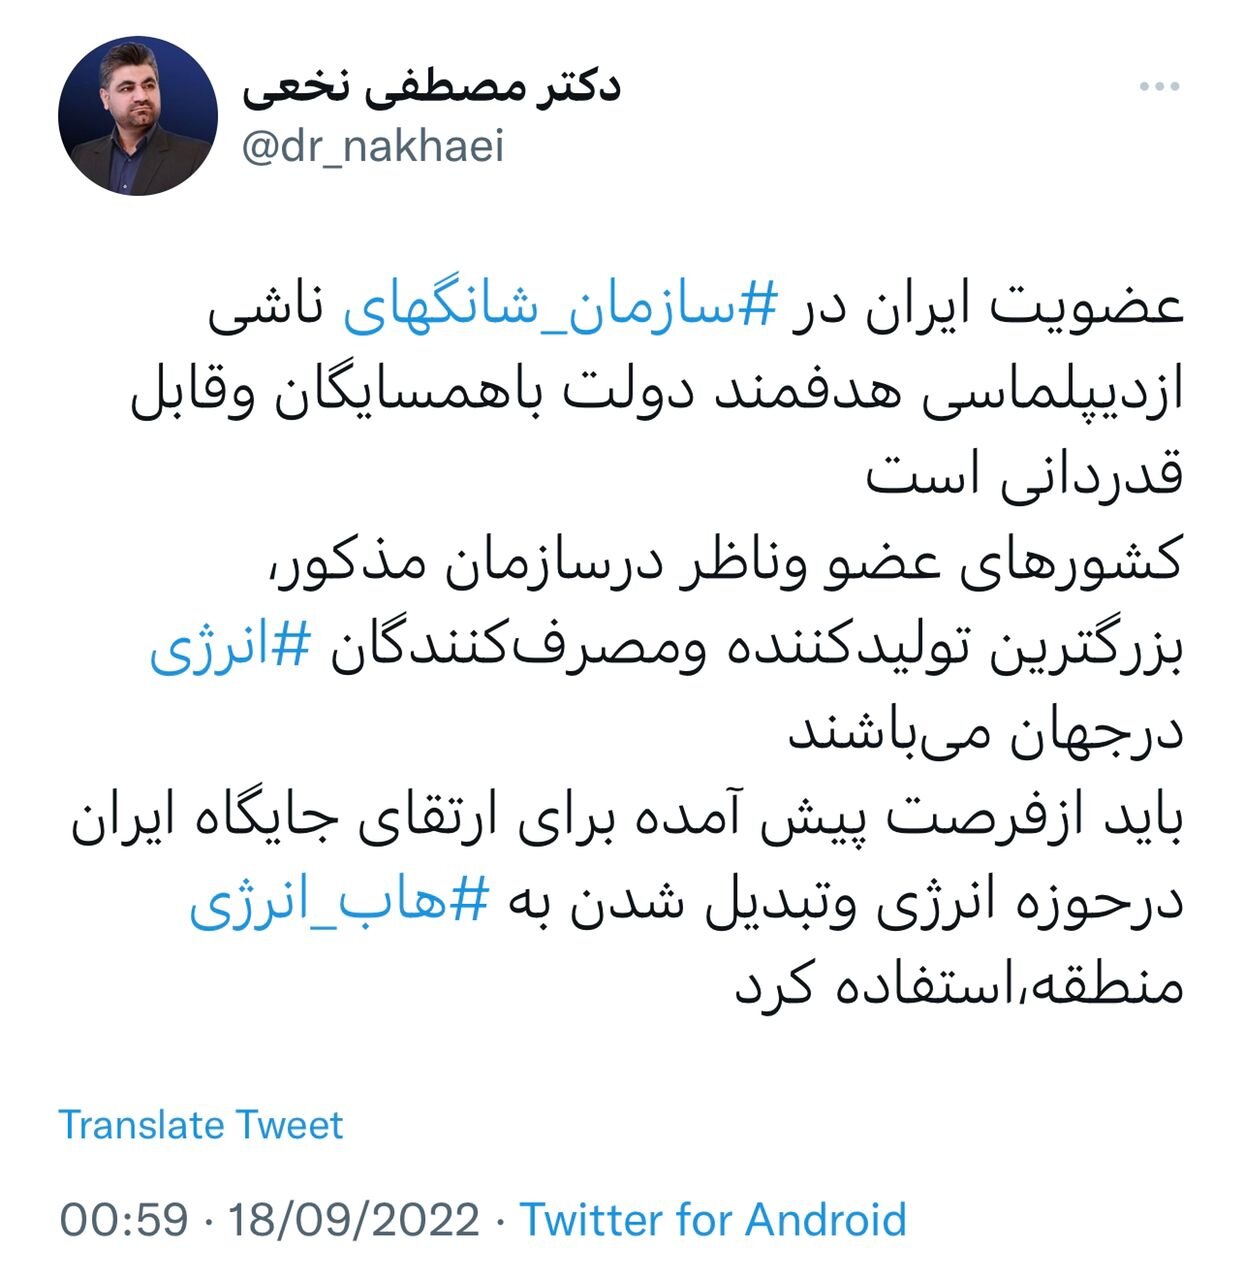 عضویت ایران در ‎سازمان شانگهای ناشی از دیپلماسی هدفمند دولت با همسایگان است